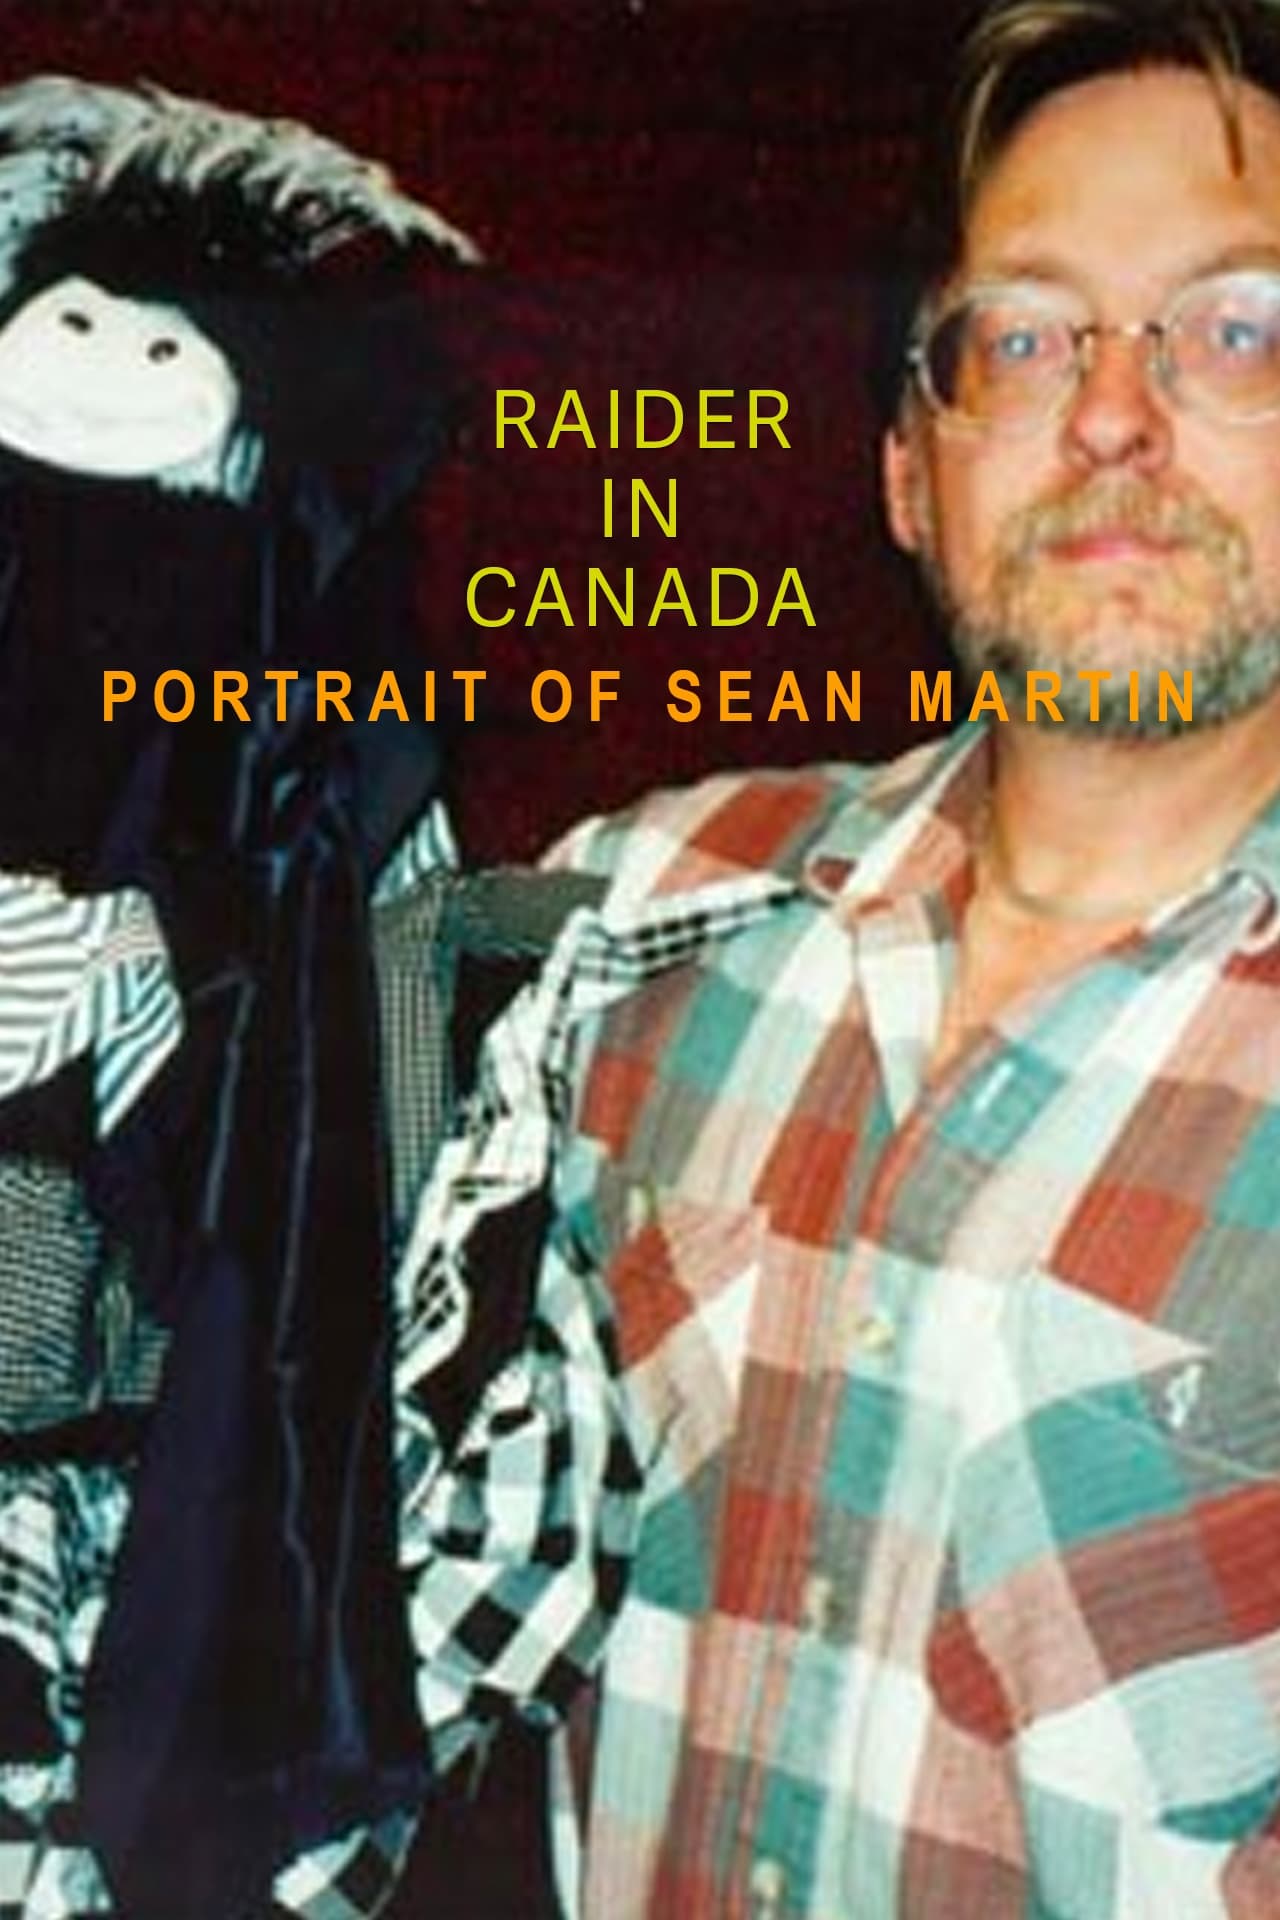 Raider in Canada: Portrait of Sean Martin